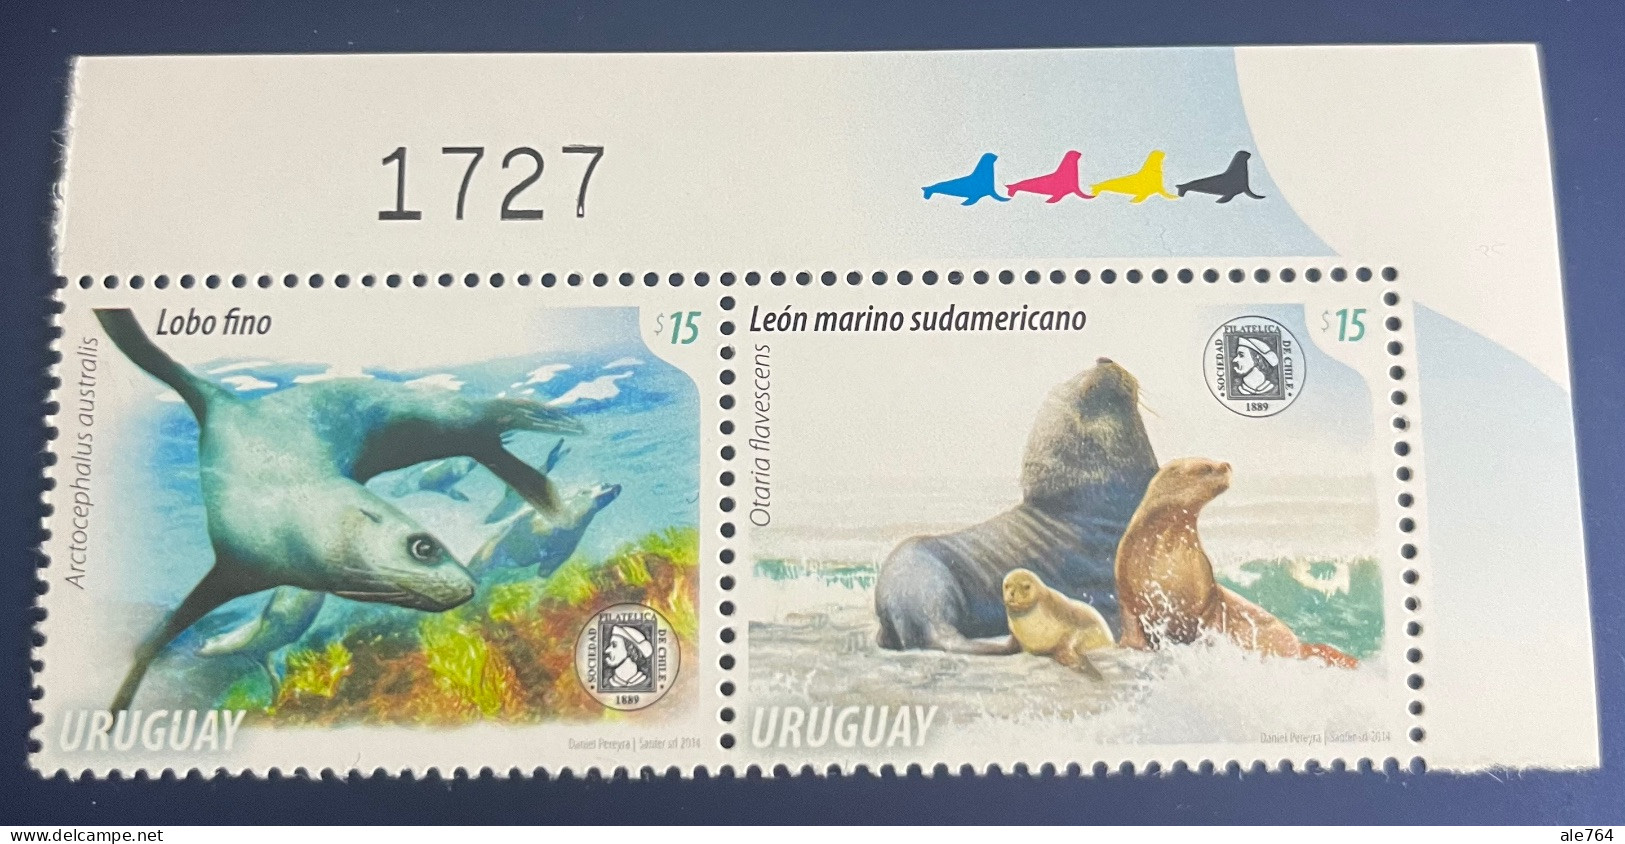 Uruguay 2014 Pinnipeds, Fauna Marina, Lobo Fino Y Leon Marino, Set Of 2, Sc 2483, MNH. - Uruguay